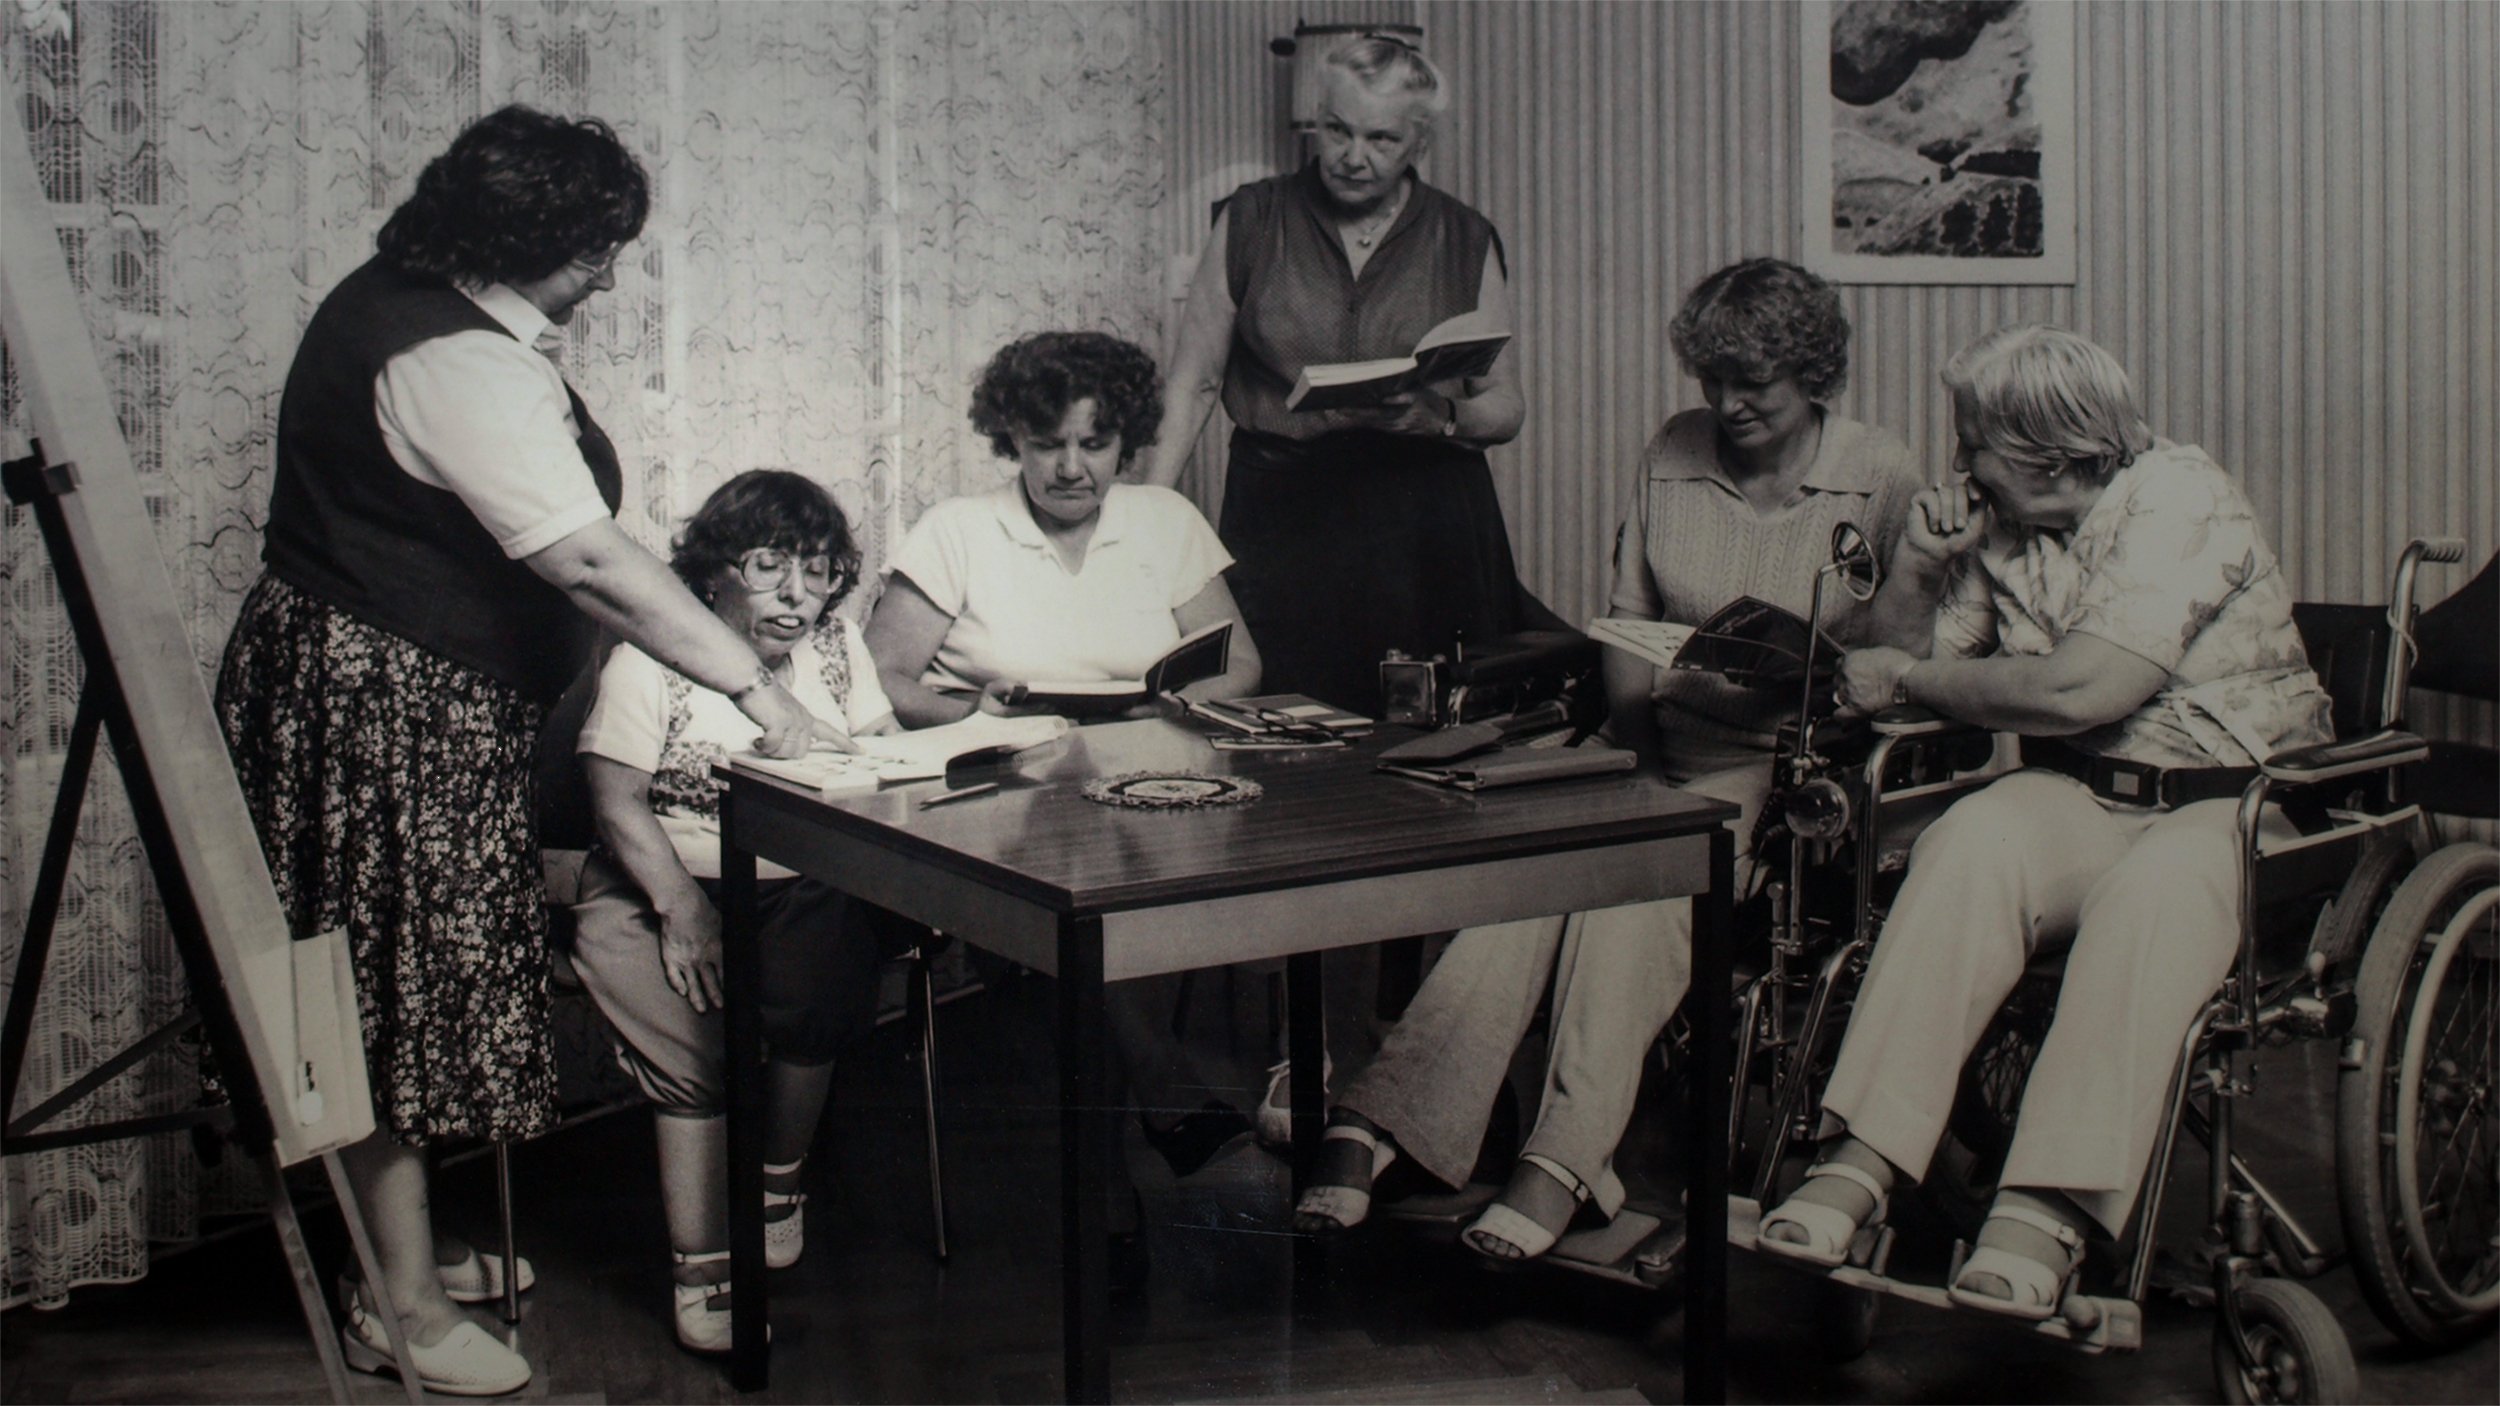 Foto in Schwarz-Weiß: Ingrid Koch als junge Frau am Tisch mit drei weiteren weiblichen Gästen, stehend zwei Mitarbeiterinnen der Freizeitstätte; die Szenerie ist historisch